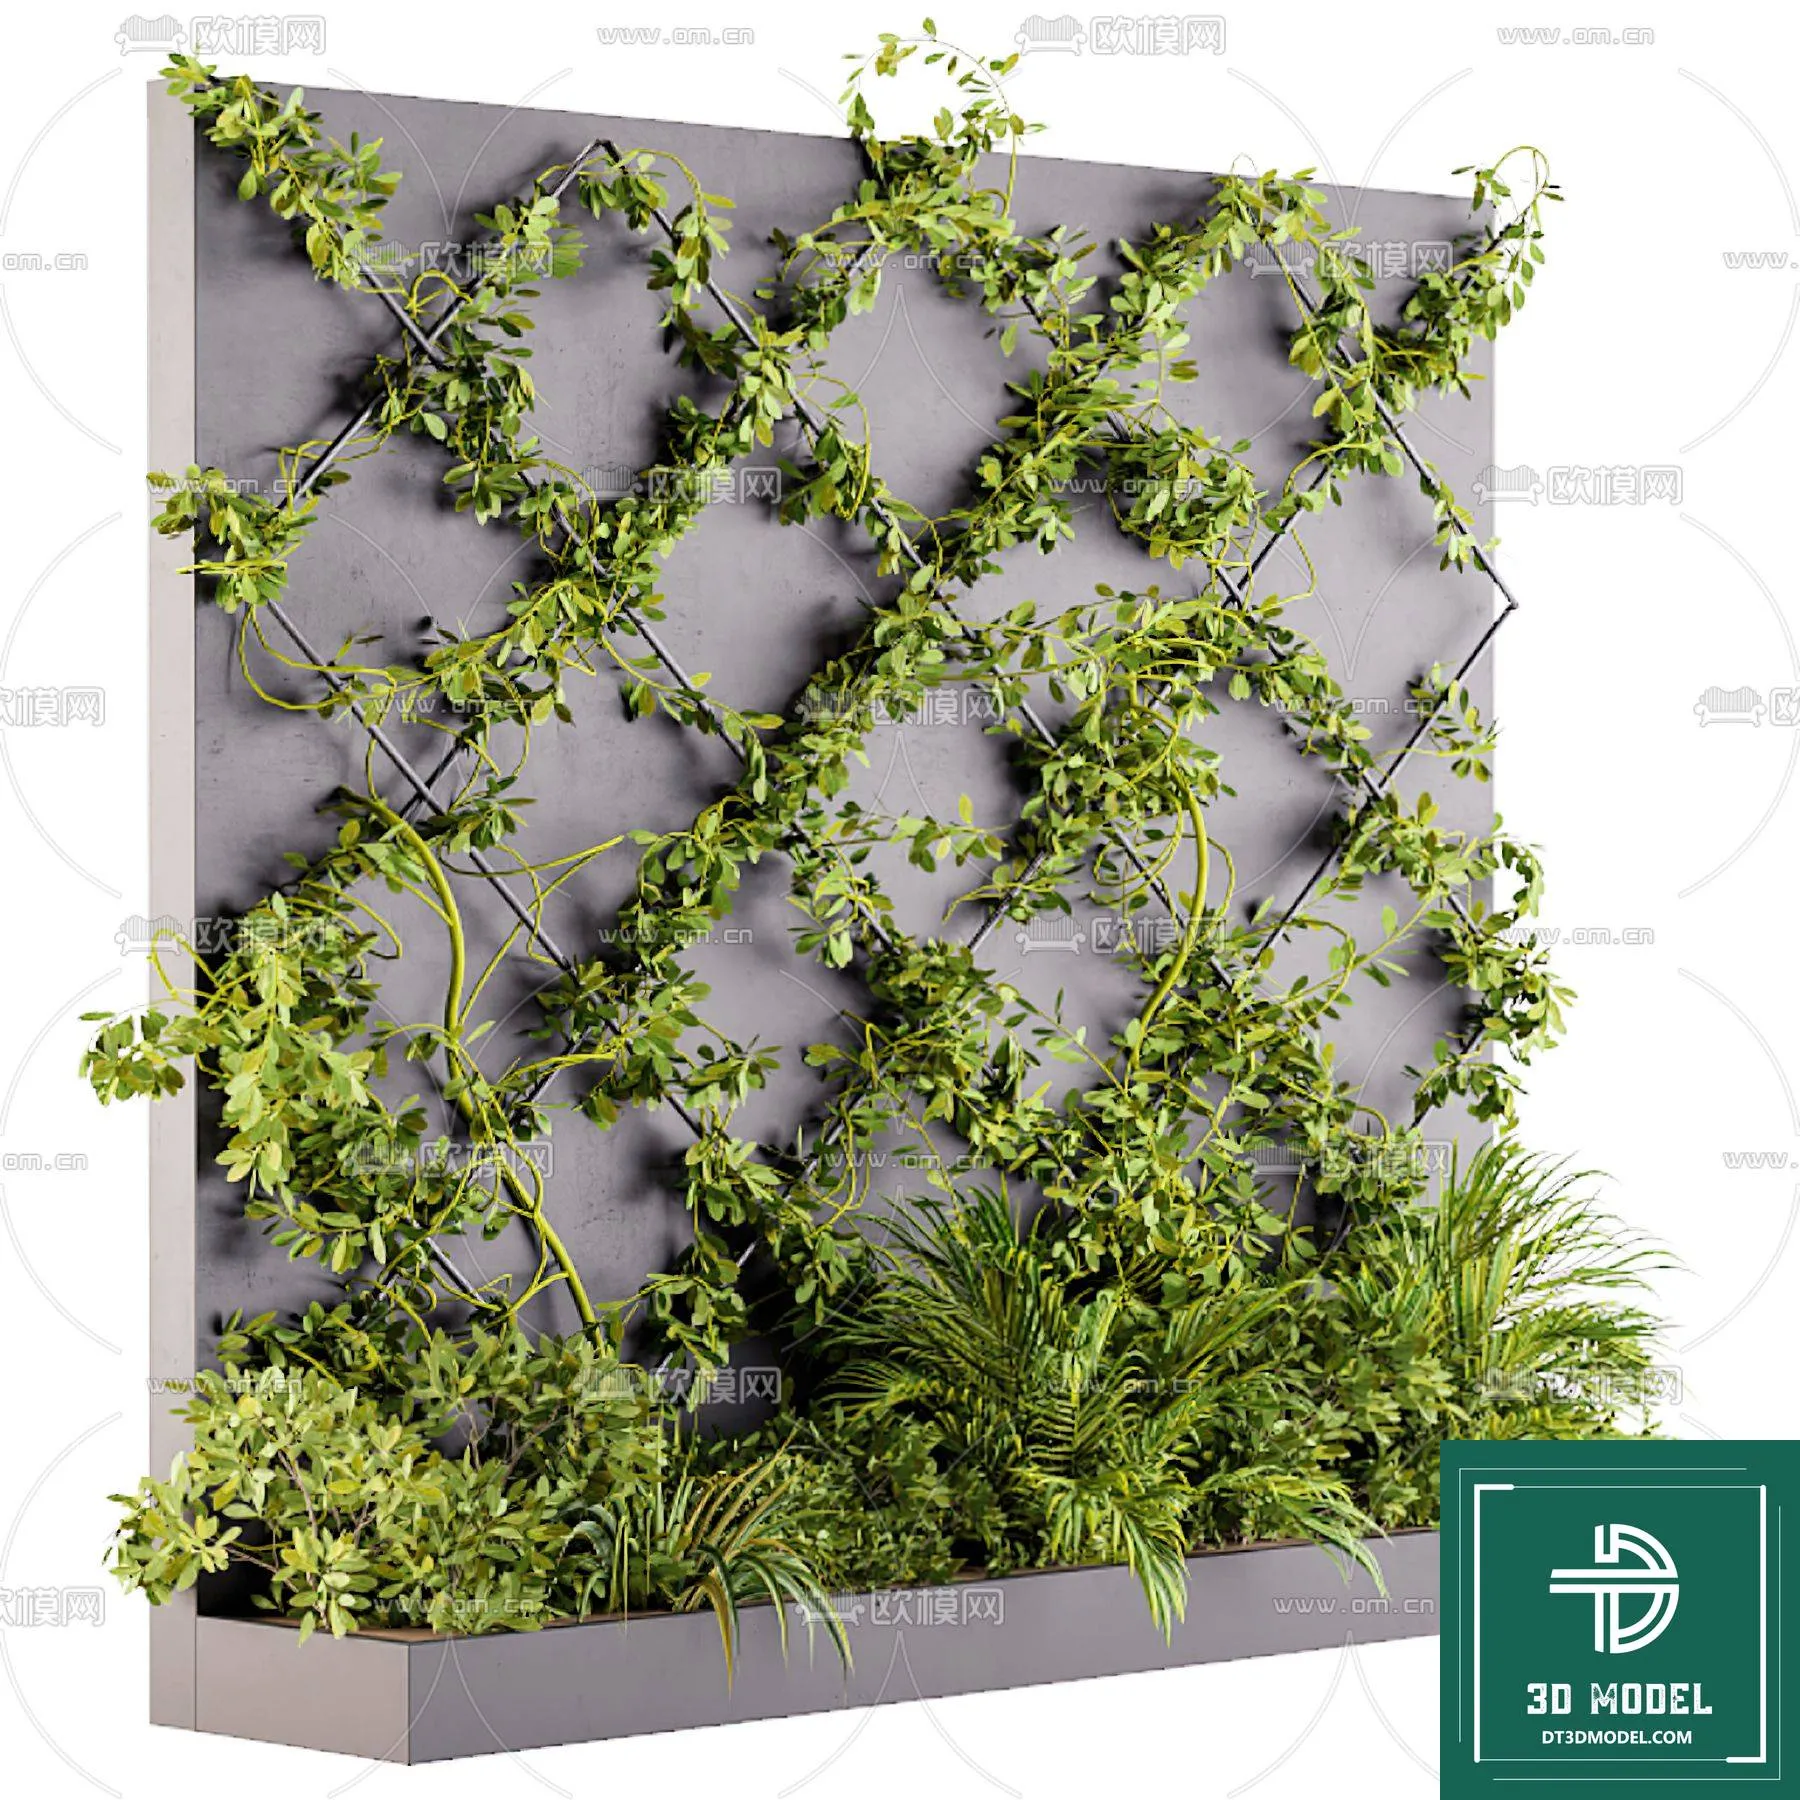 VERTICAL GARDEN – FITOWALL PLANT 3D MODEL – 142